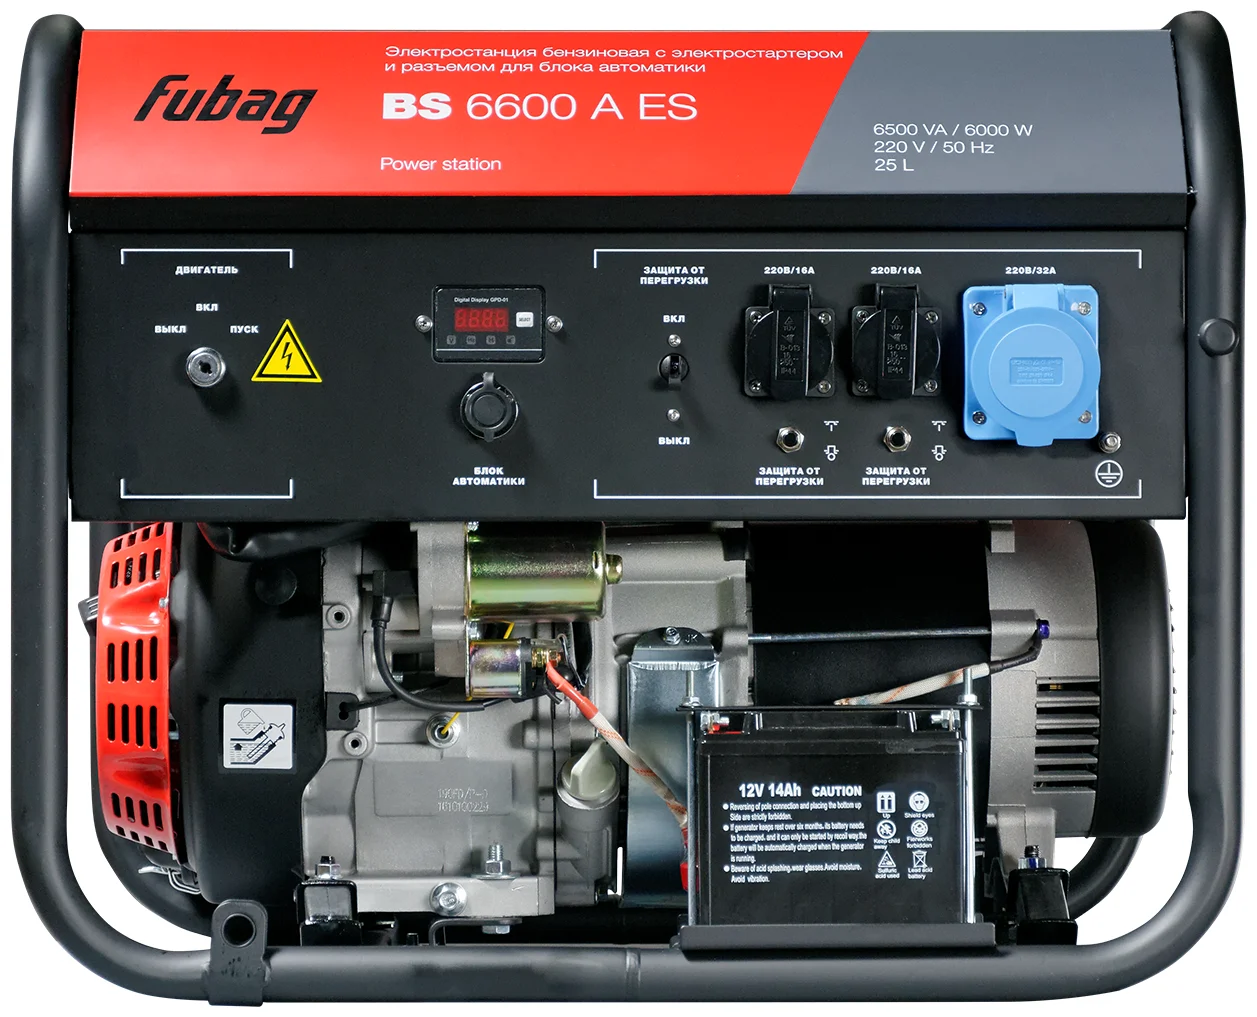 Fubag BS 6600 A ES, (6500 Вт) - число фаз: 1